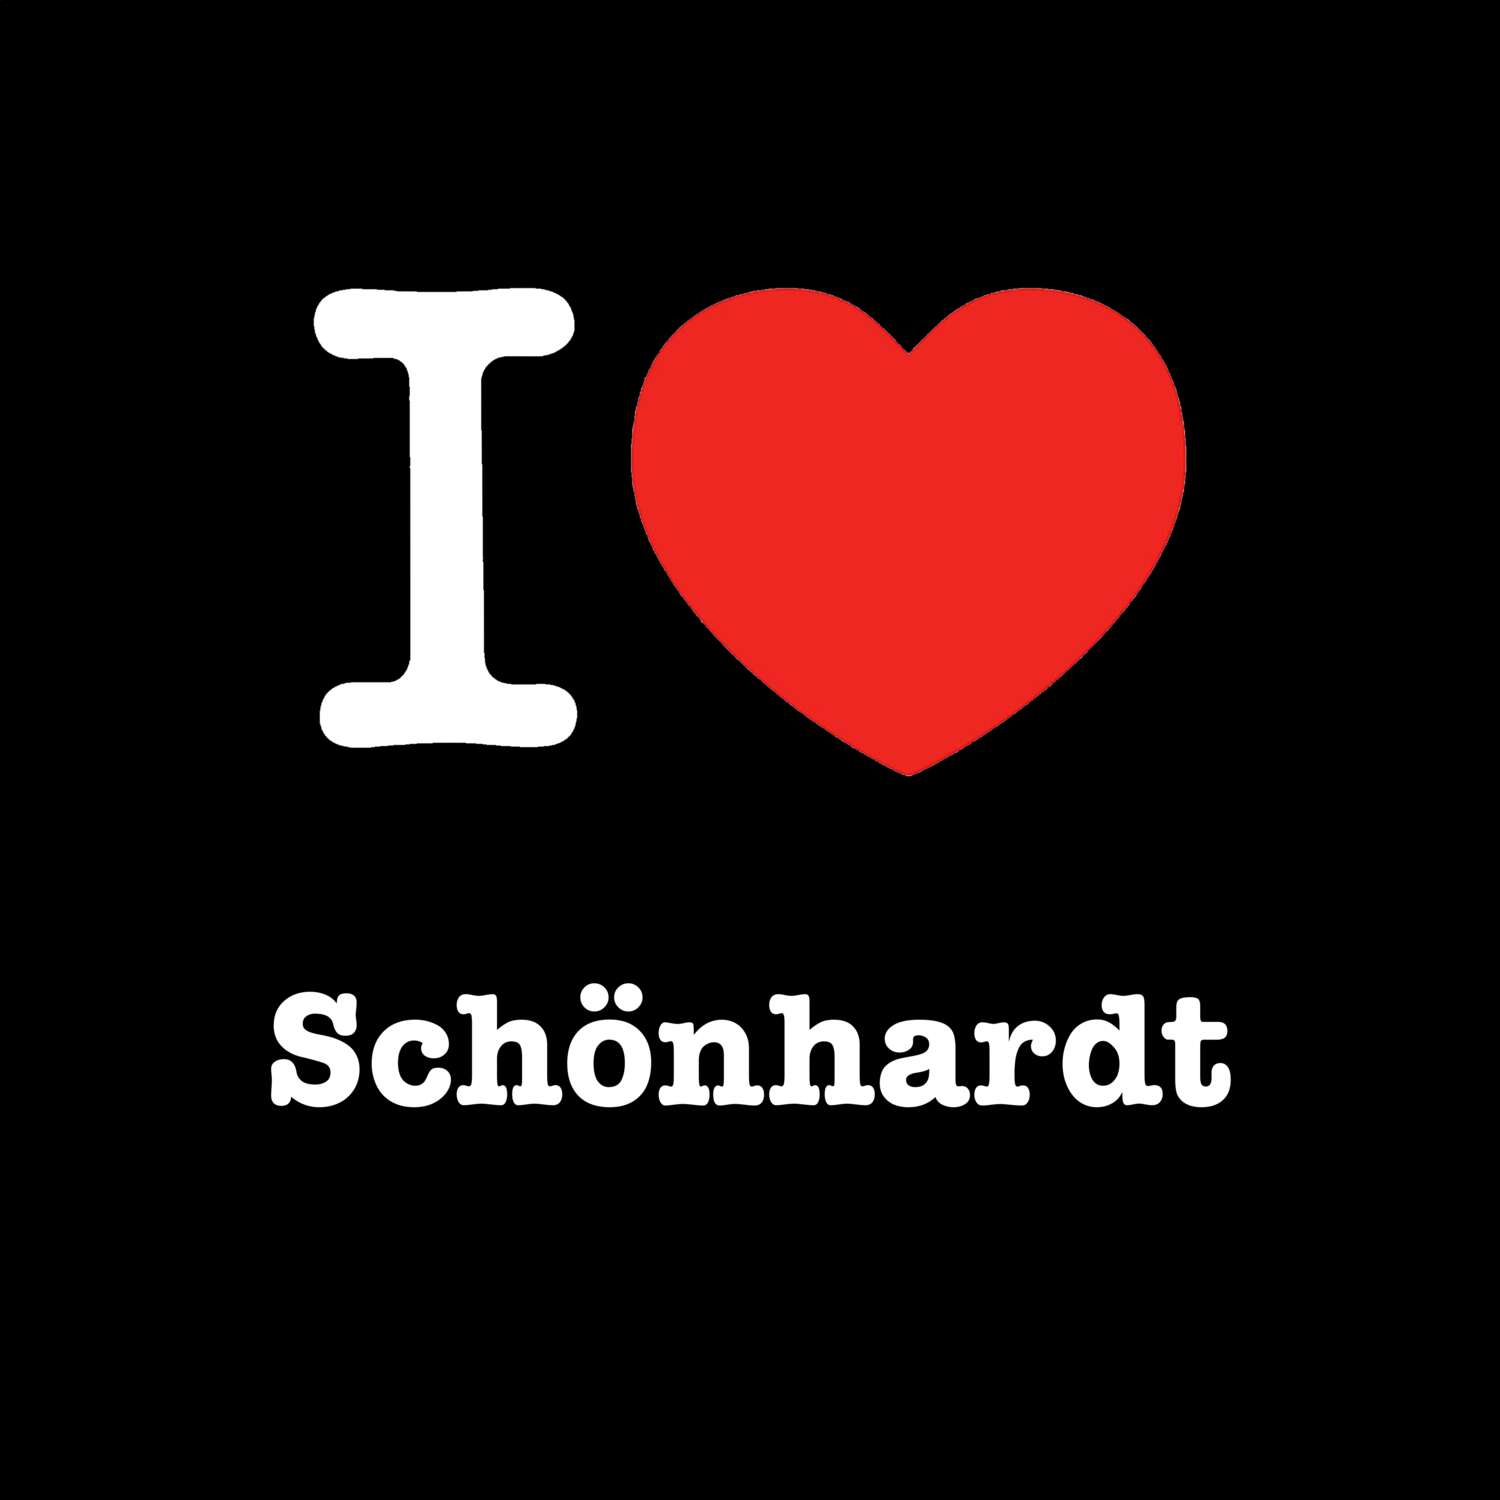 Schönhardt T-Shirt »I love«